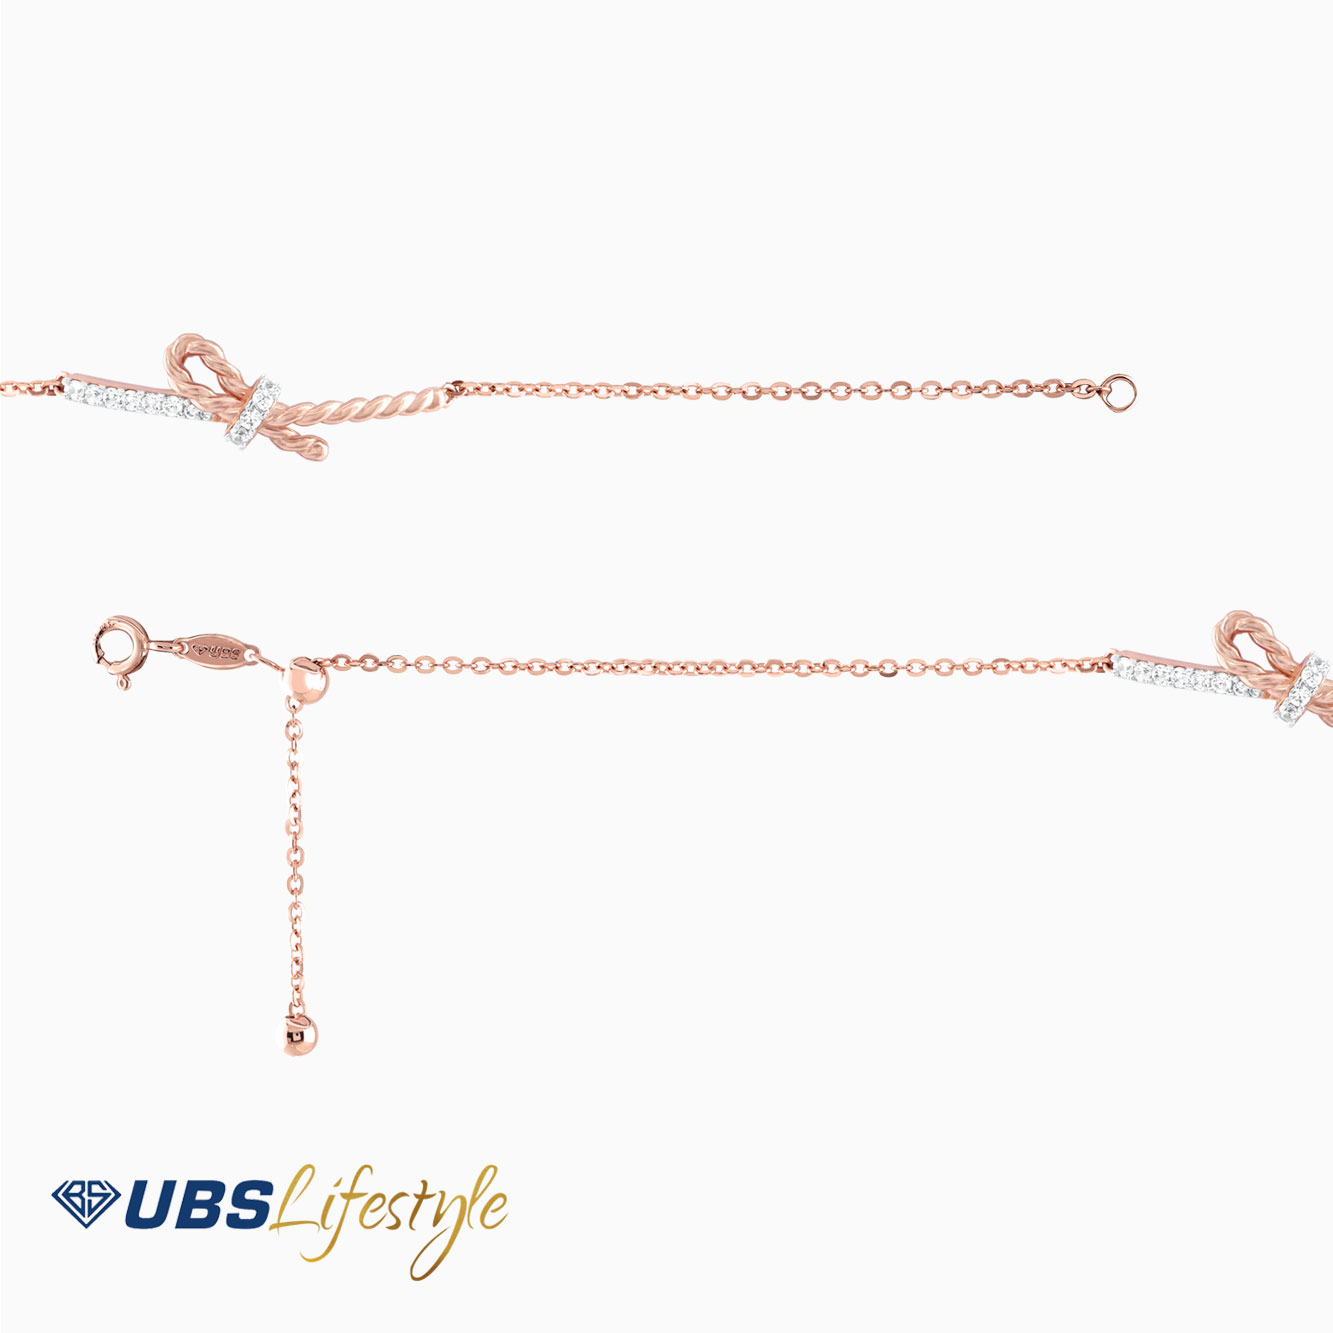 UBS Gelang Emas Knot - Ksg0857 - 17K